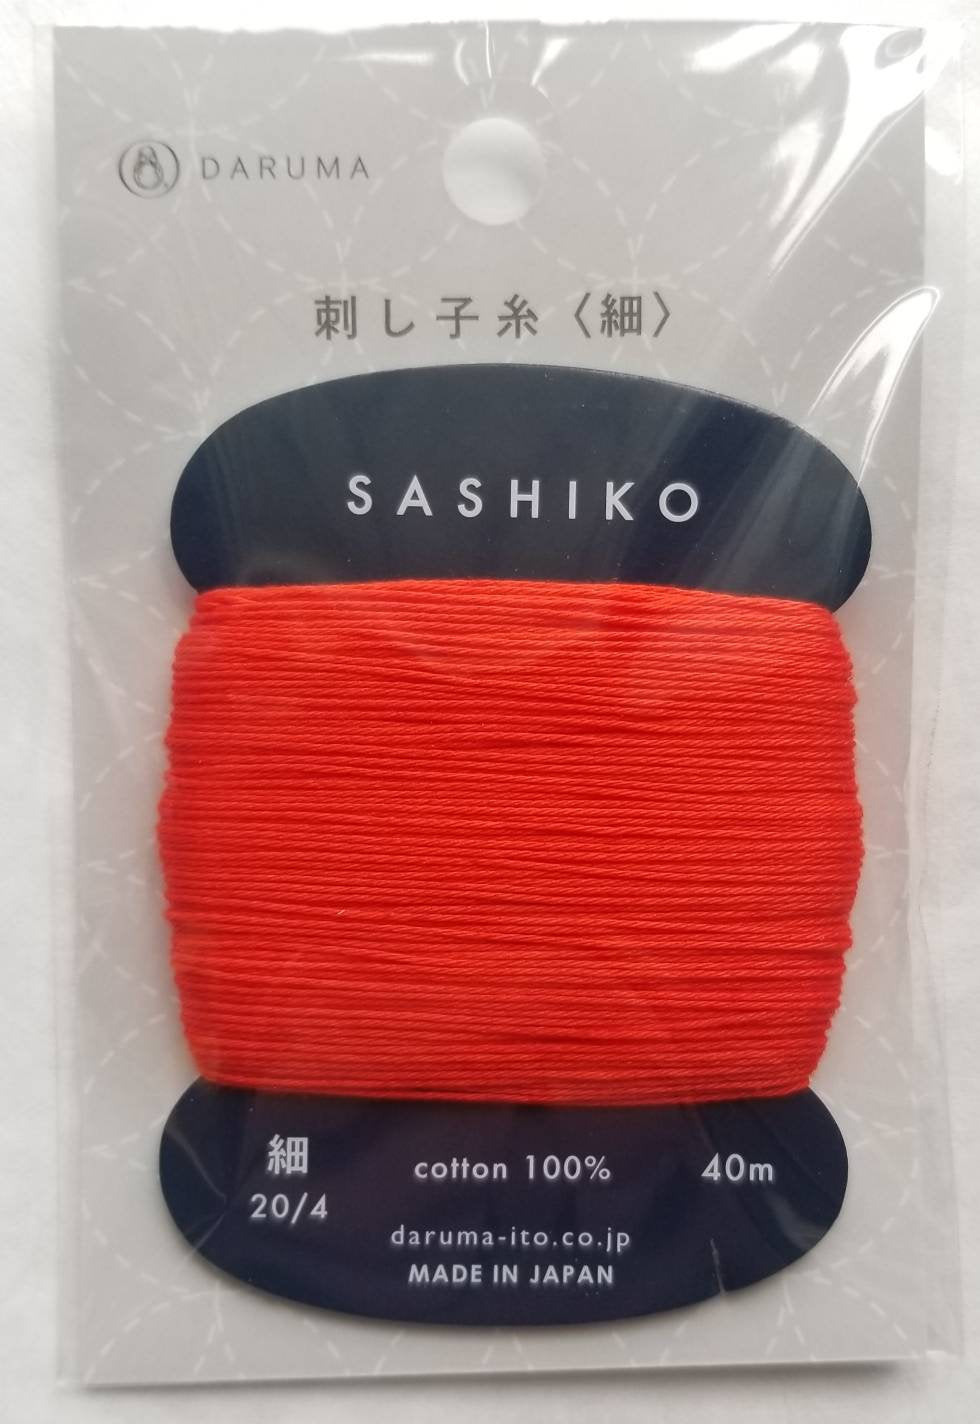 Daruma #212 VERMILLION Japanese Cotton SASHIKO thread 40 meter skein 20/4 朱赤 vermillion red